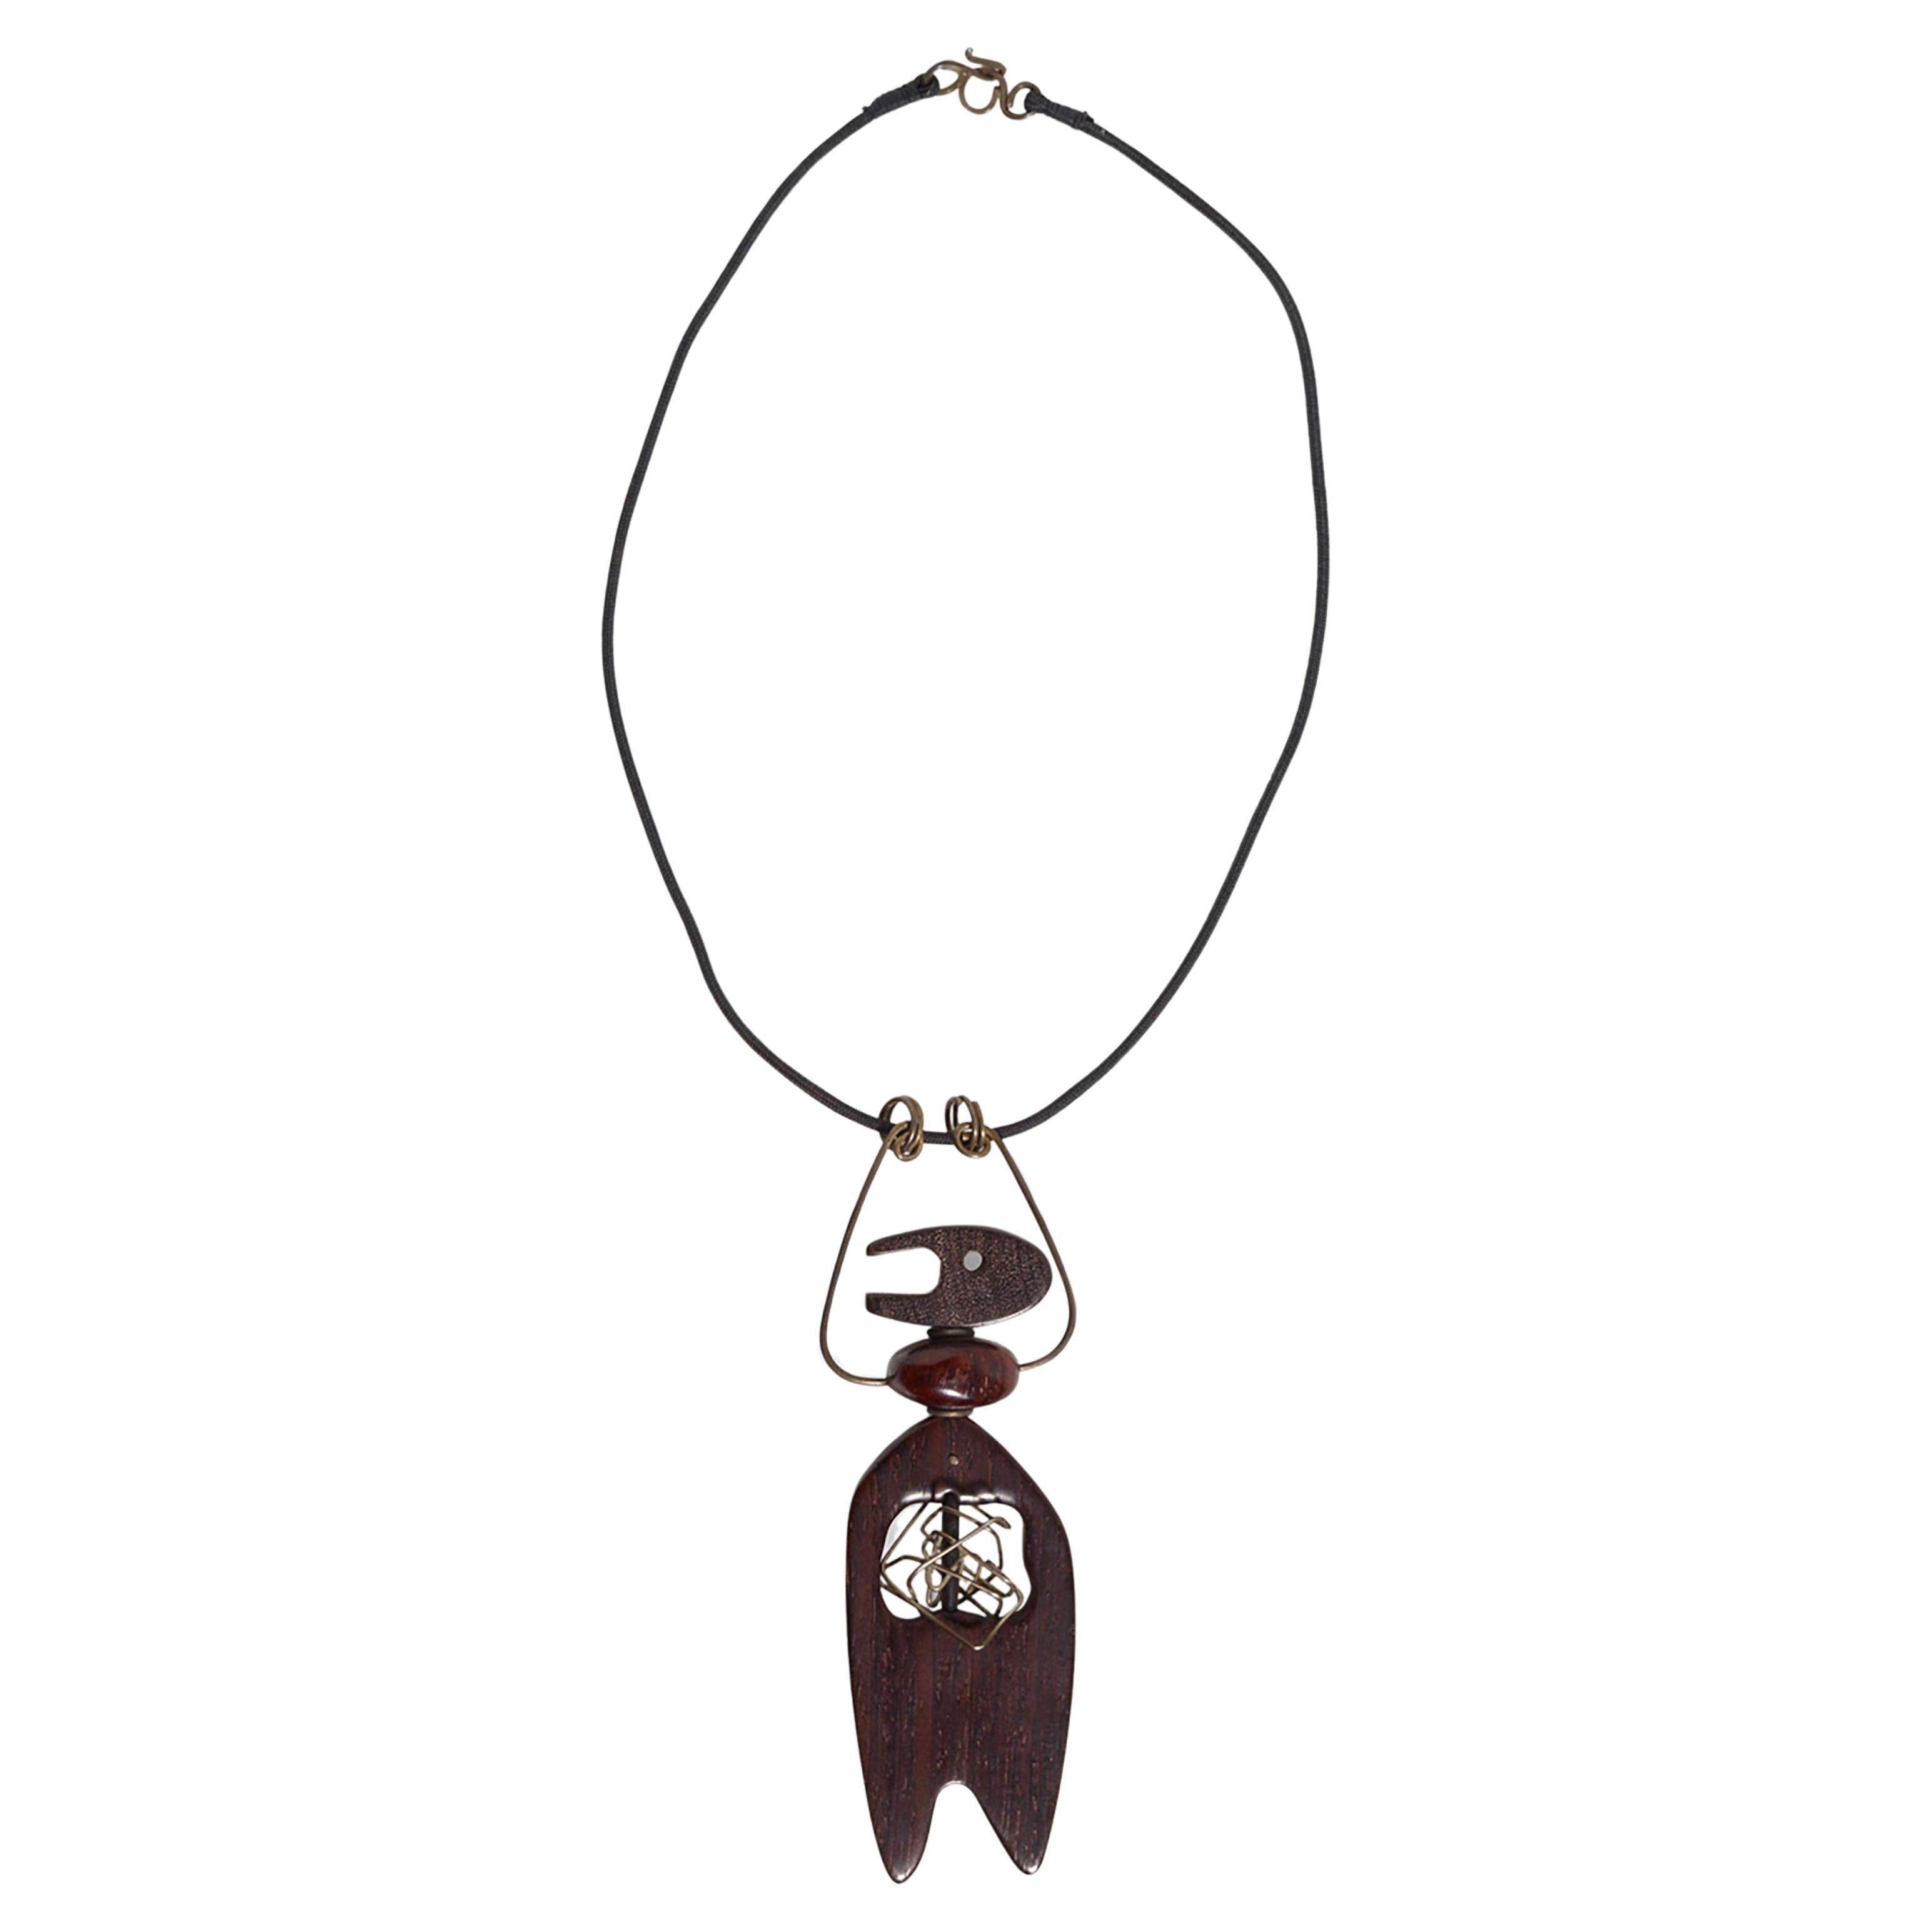 Seltene, handgeschnitzte Halskette aus Ebenholz mit einem Mann mit gefangenem Torso-Anhänger, geschaffen von Milton Cavagnaro aus Mill Valley, Kalifornien. Der Anhänger ist 4